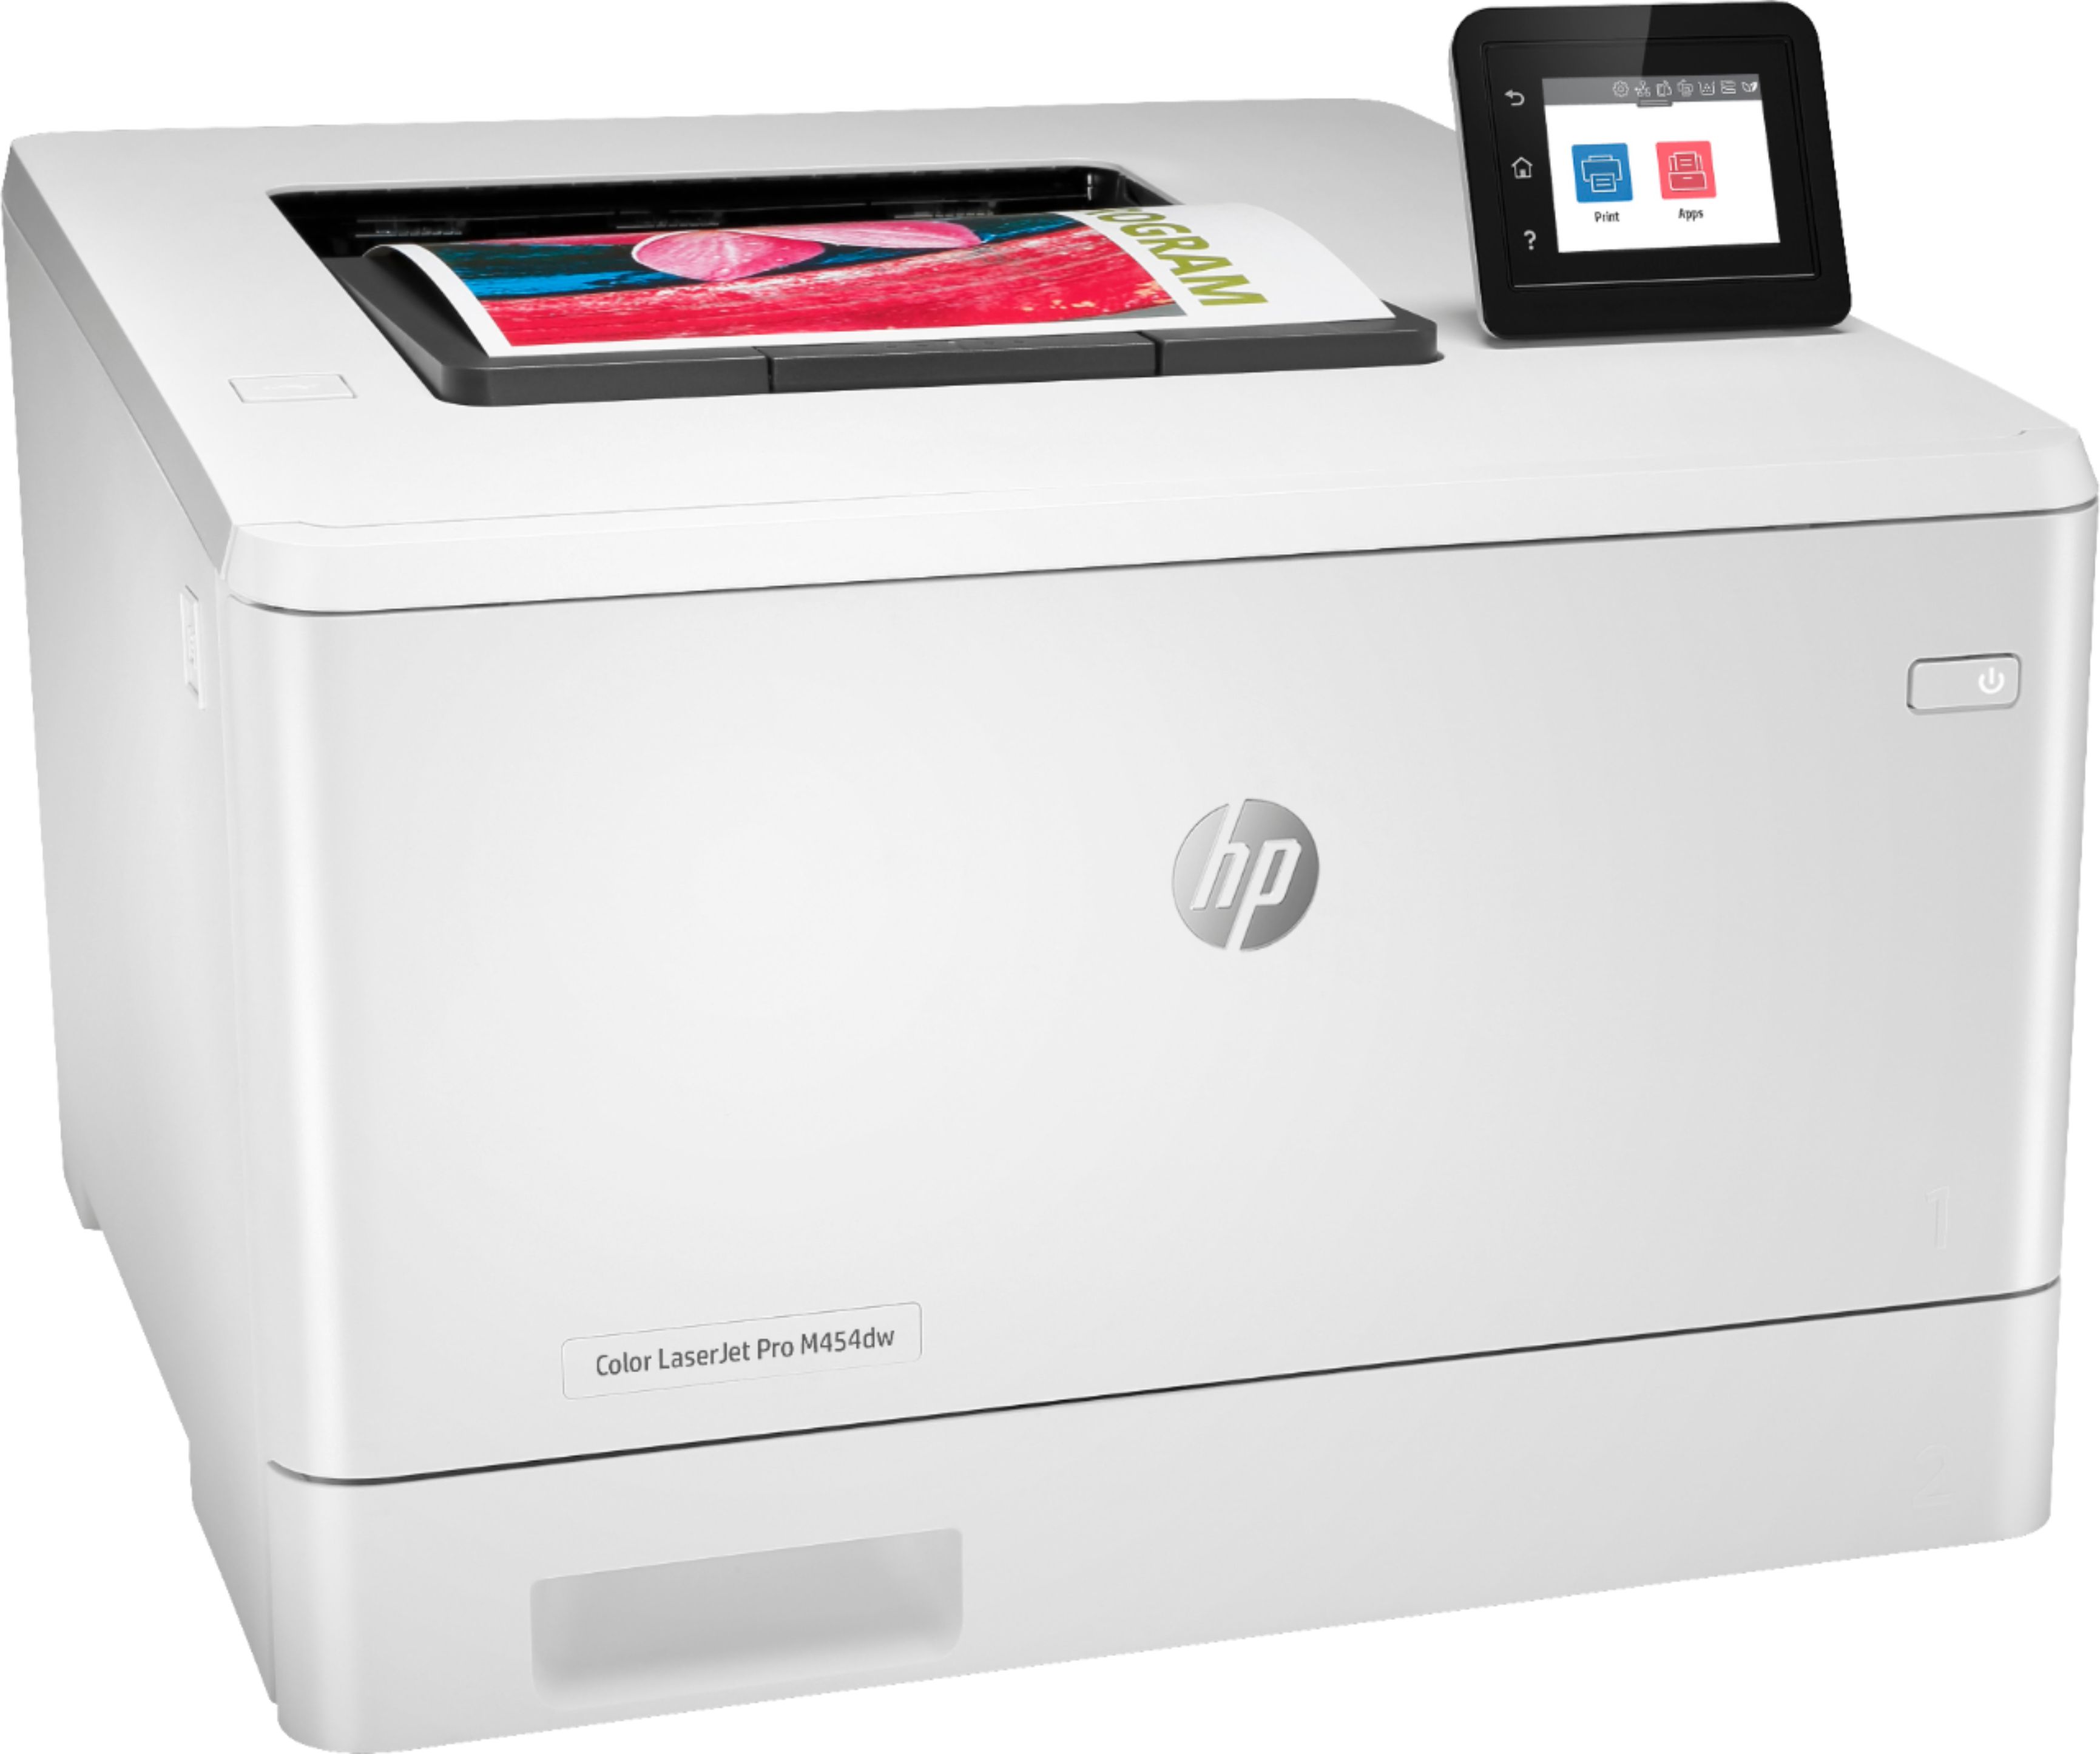 Angle View: HP - LaserJet Pro M454dw Wireless Color Laser Printer - White